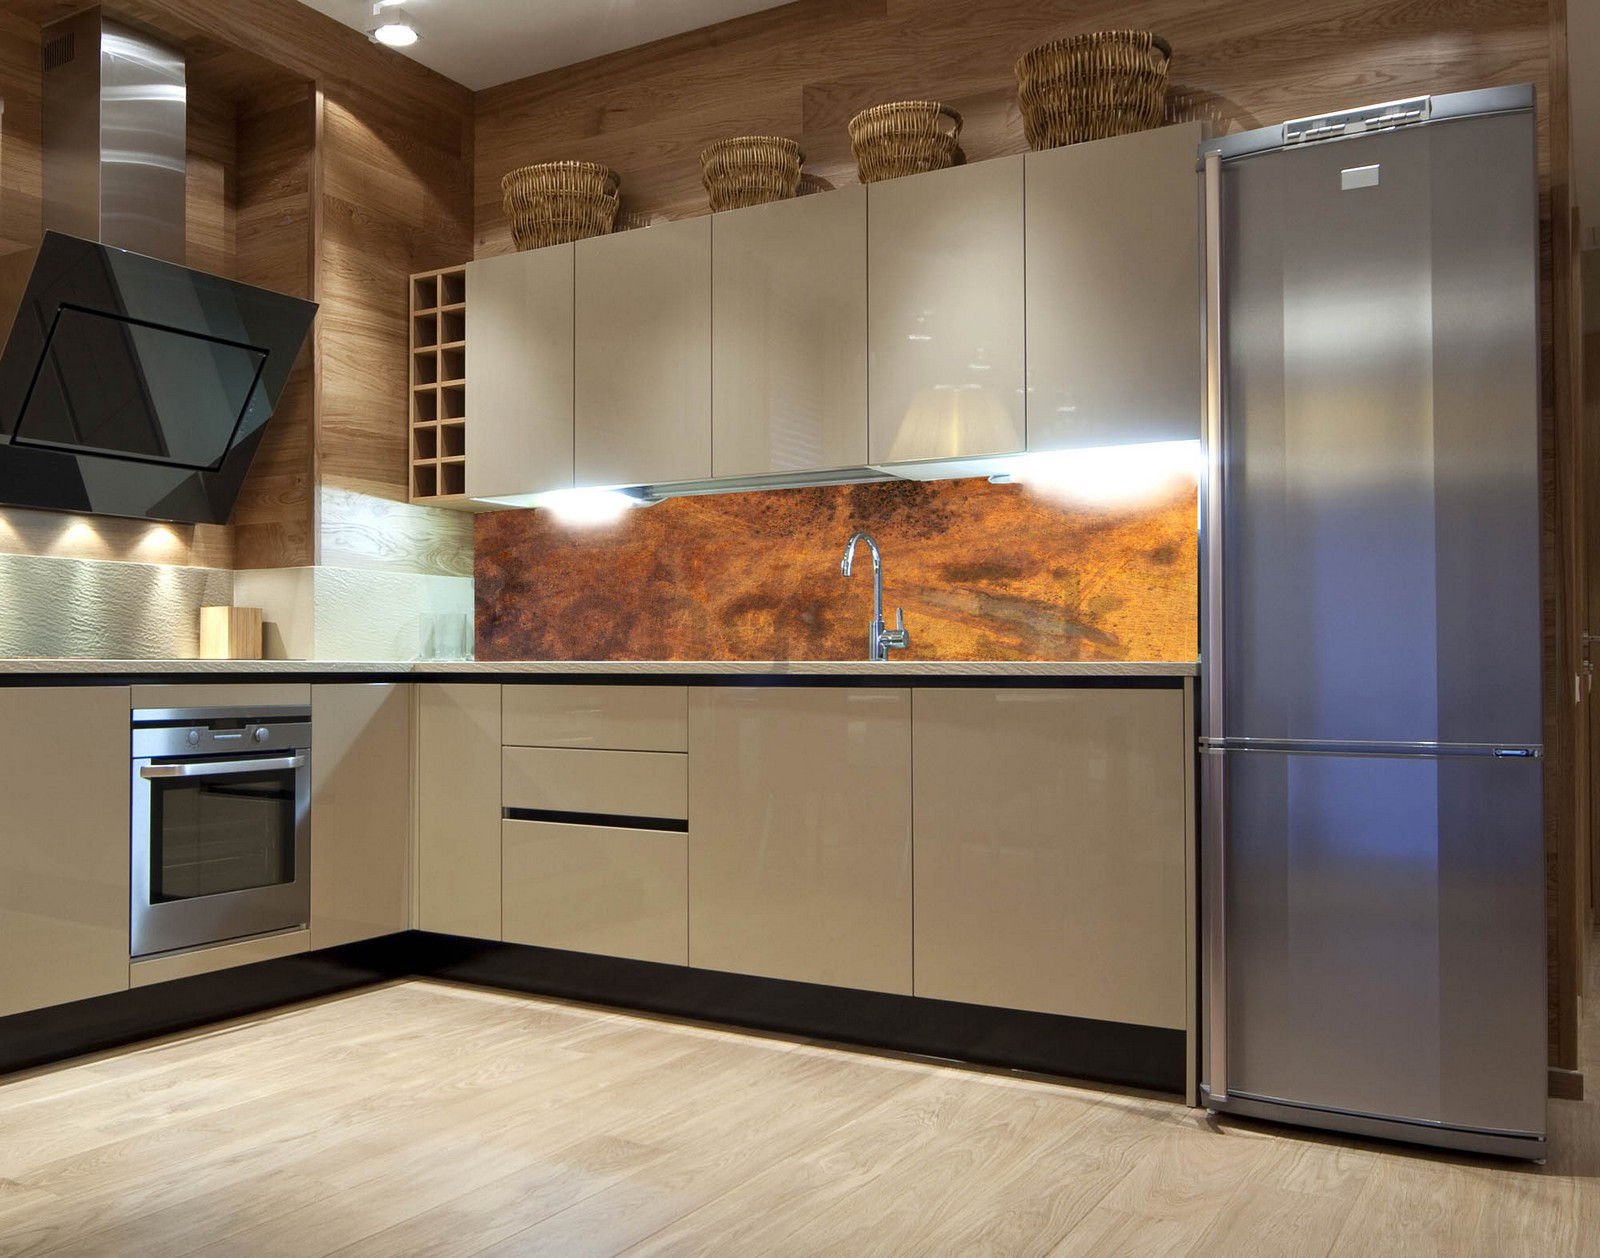 Samolepiaca umývateľná tapeta za kuchynskú linku - Medený obklad, 180x60 cm